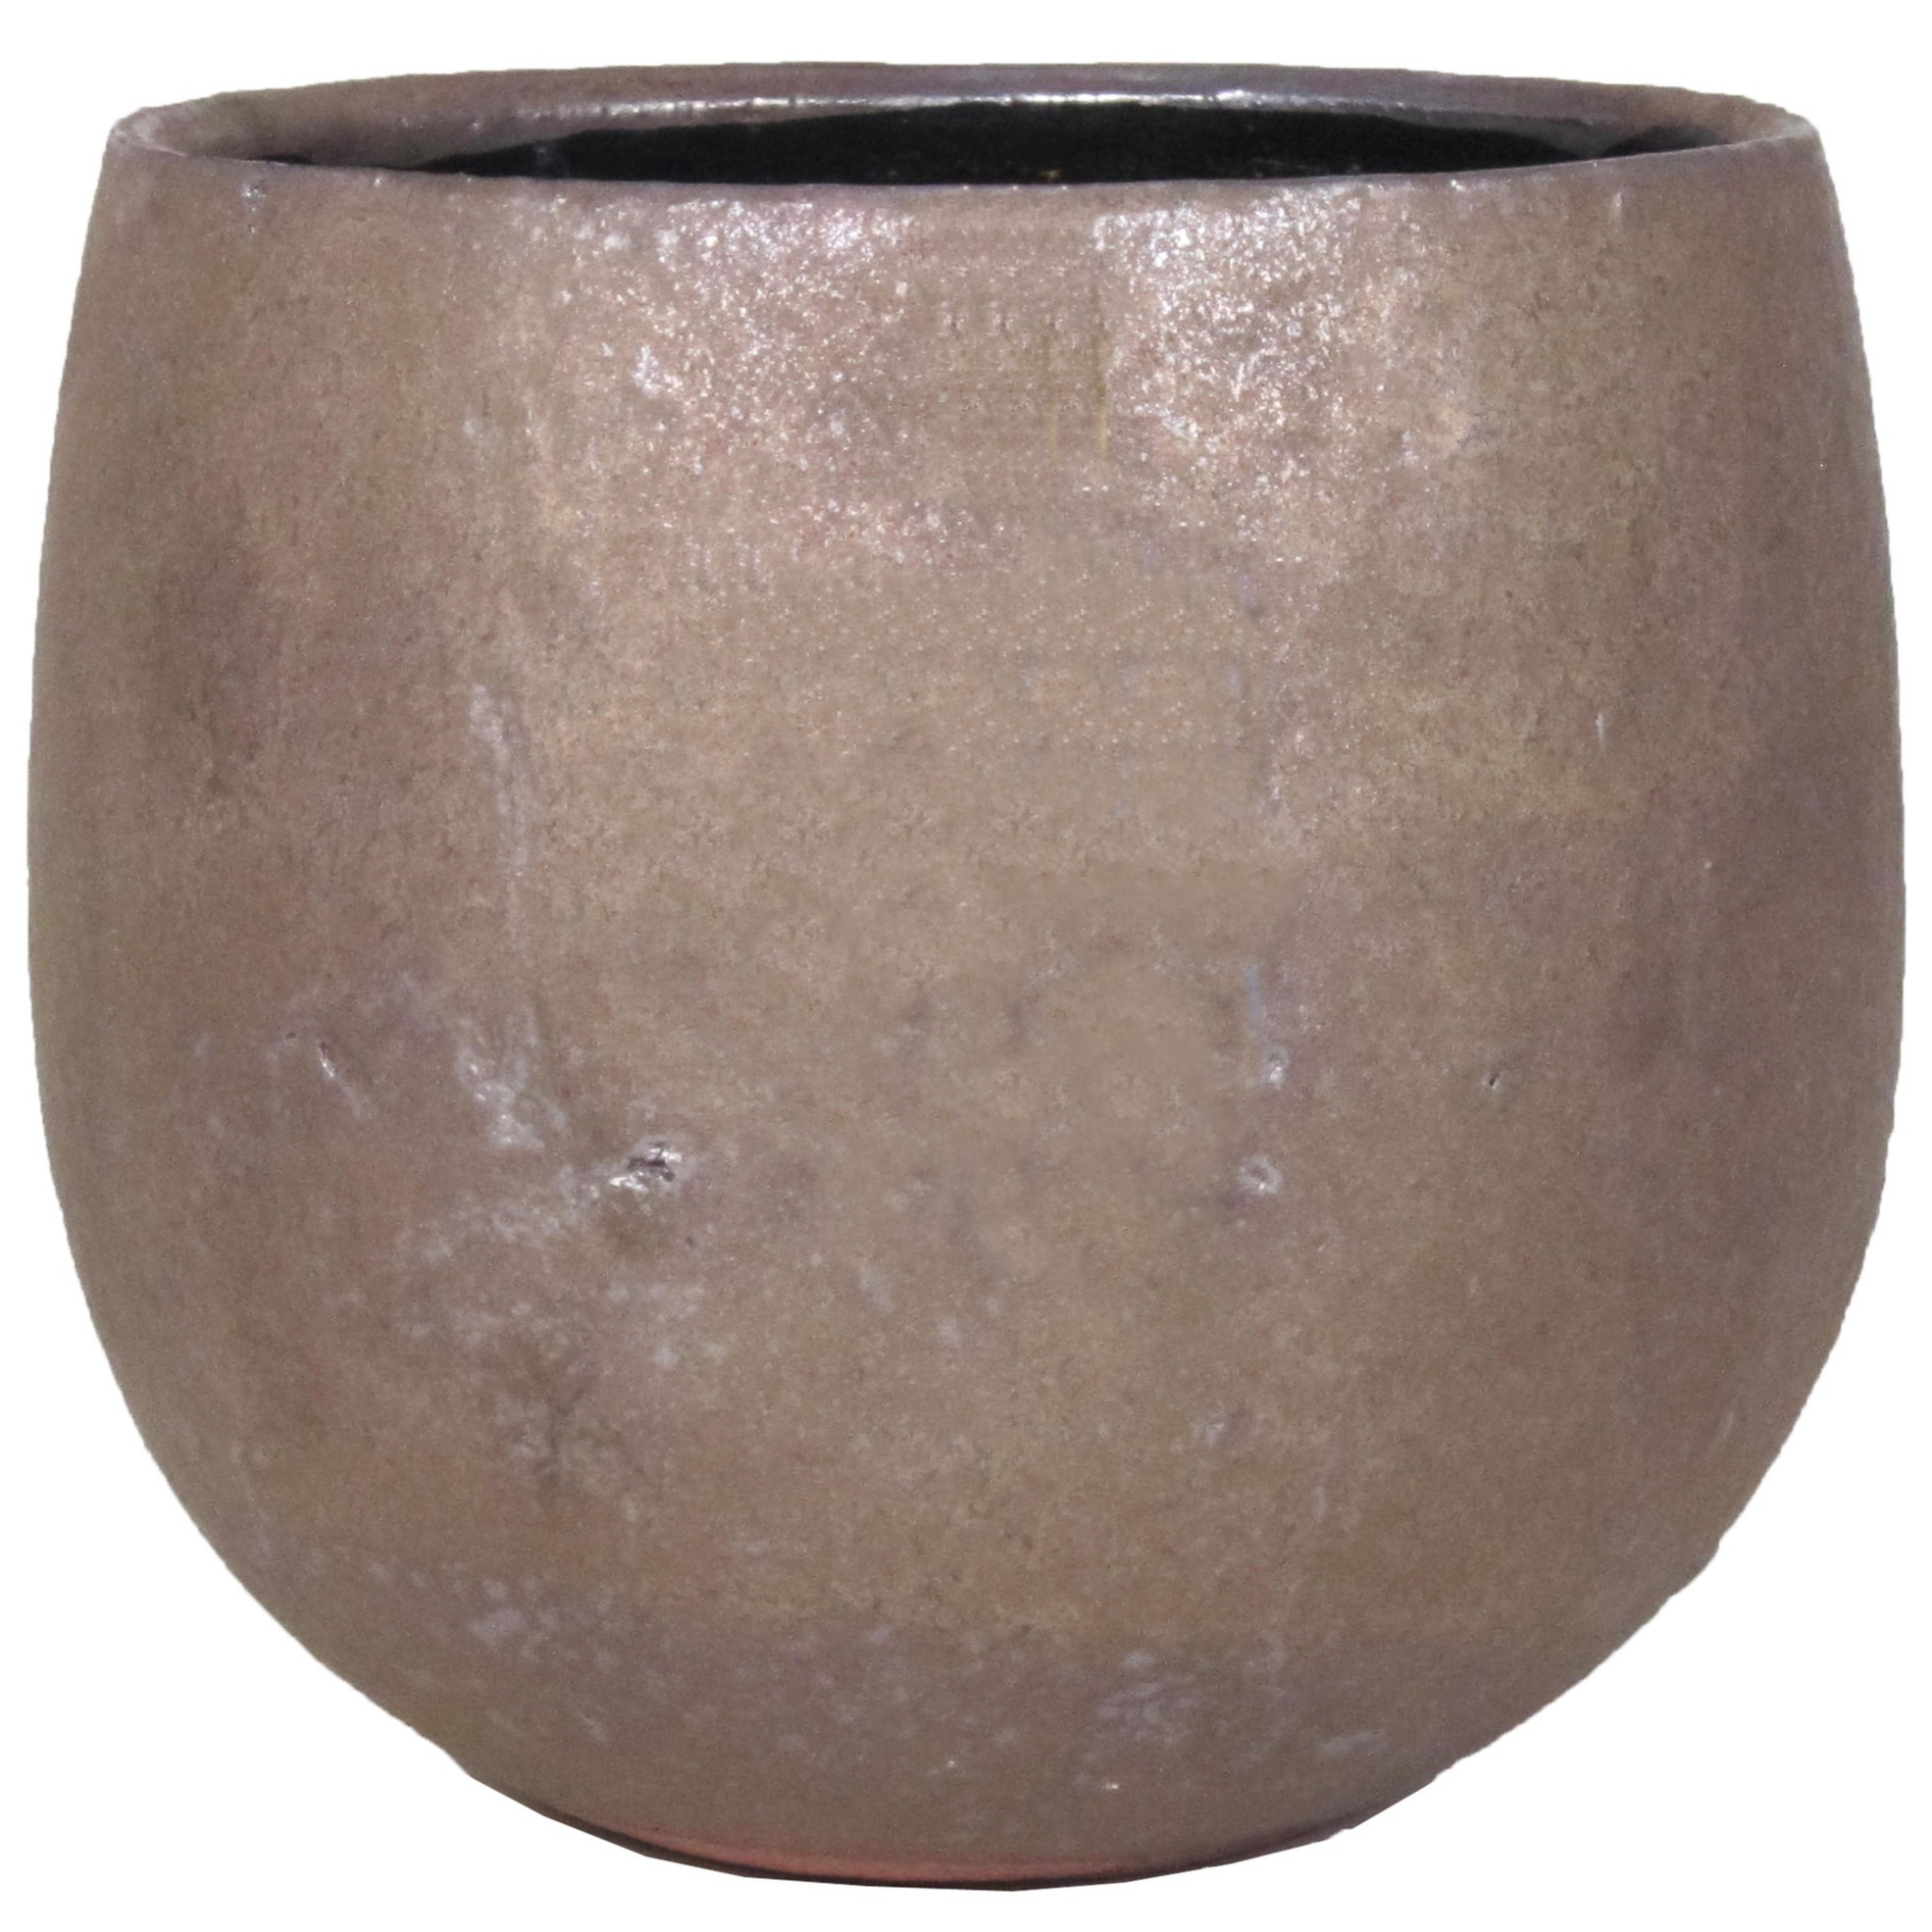 Bloempot-plantenpot schaal van keramiek glanzend brons kleur motief D14-11.5 cm en H10.5 cm